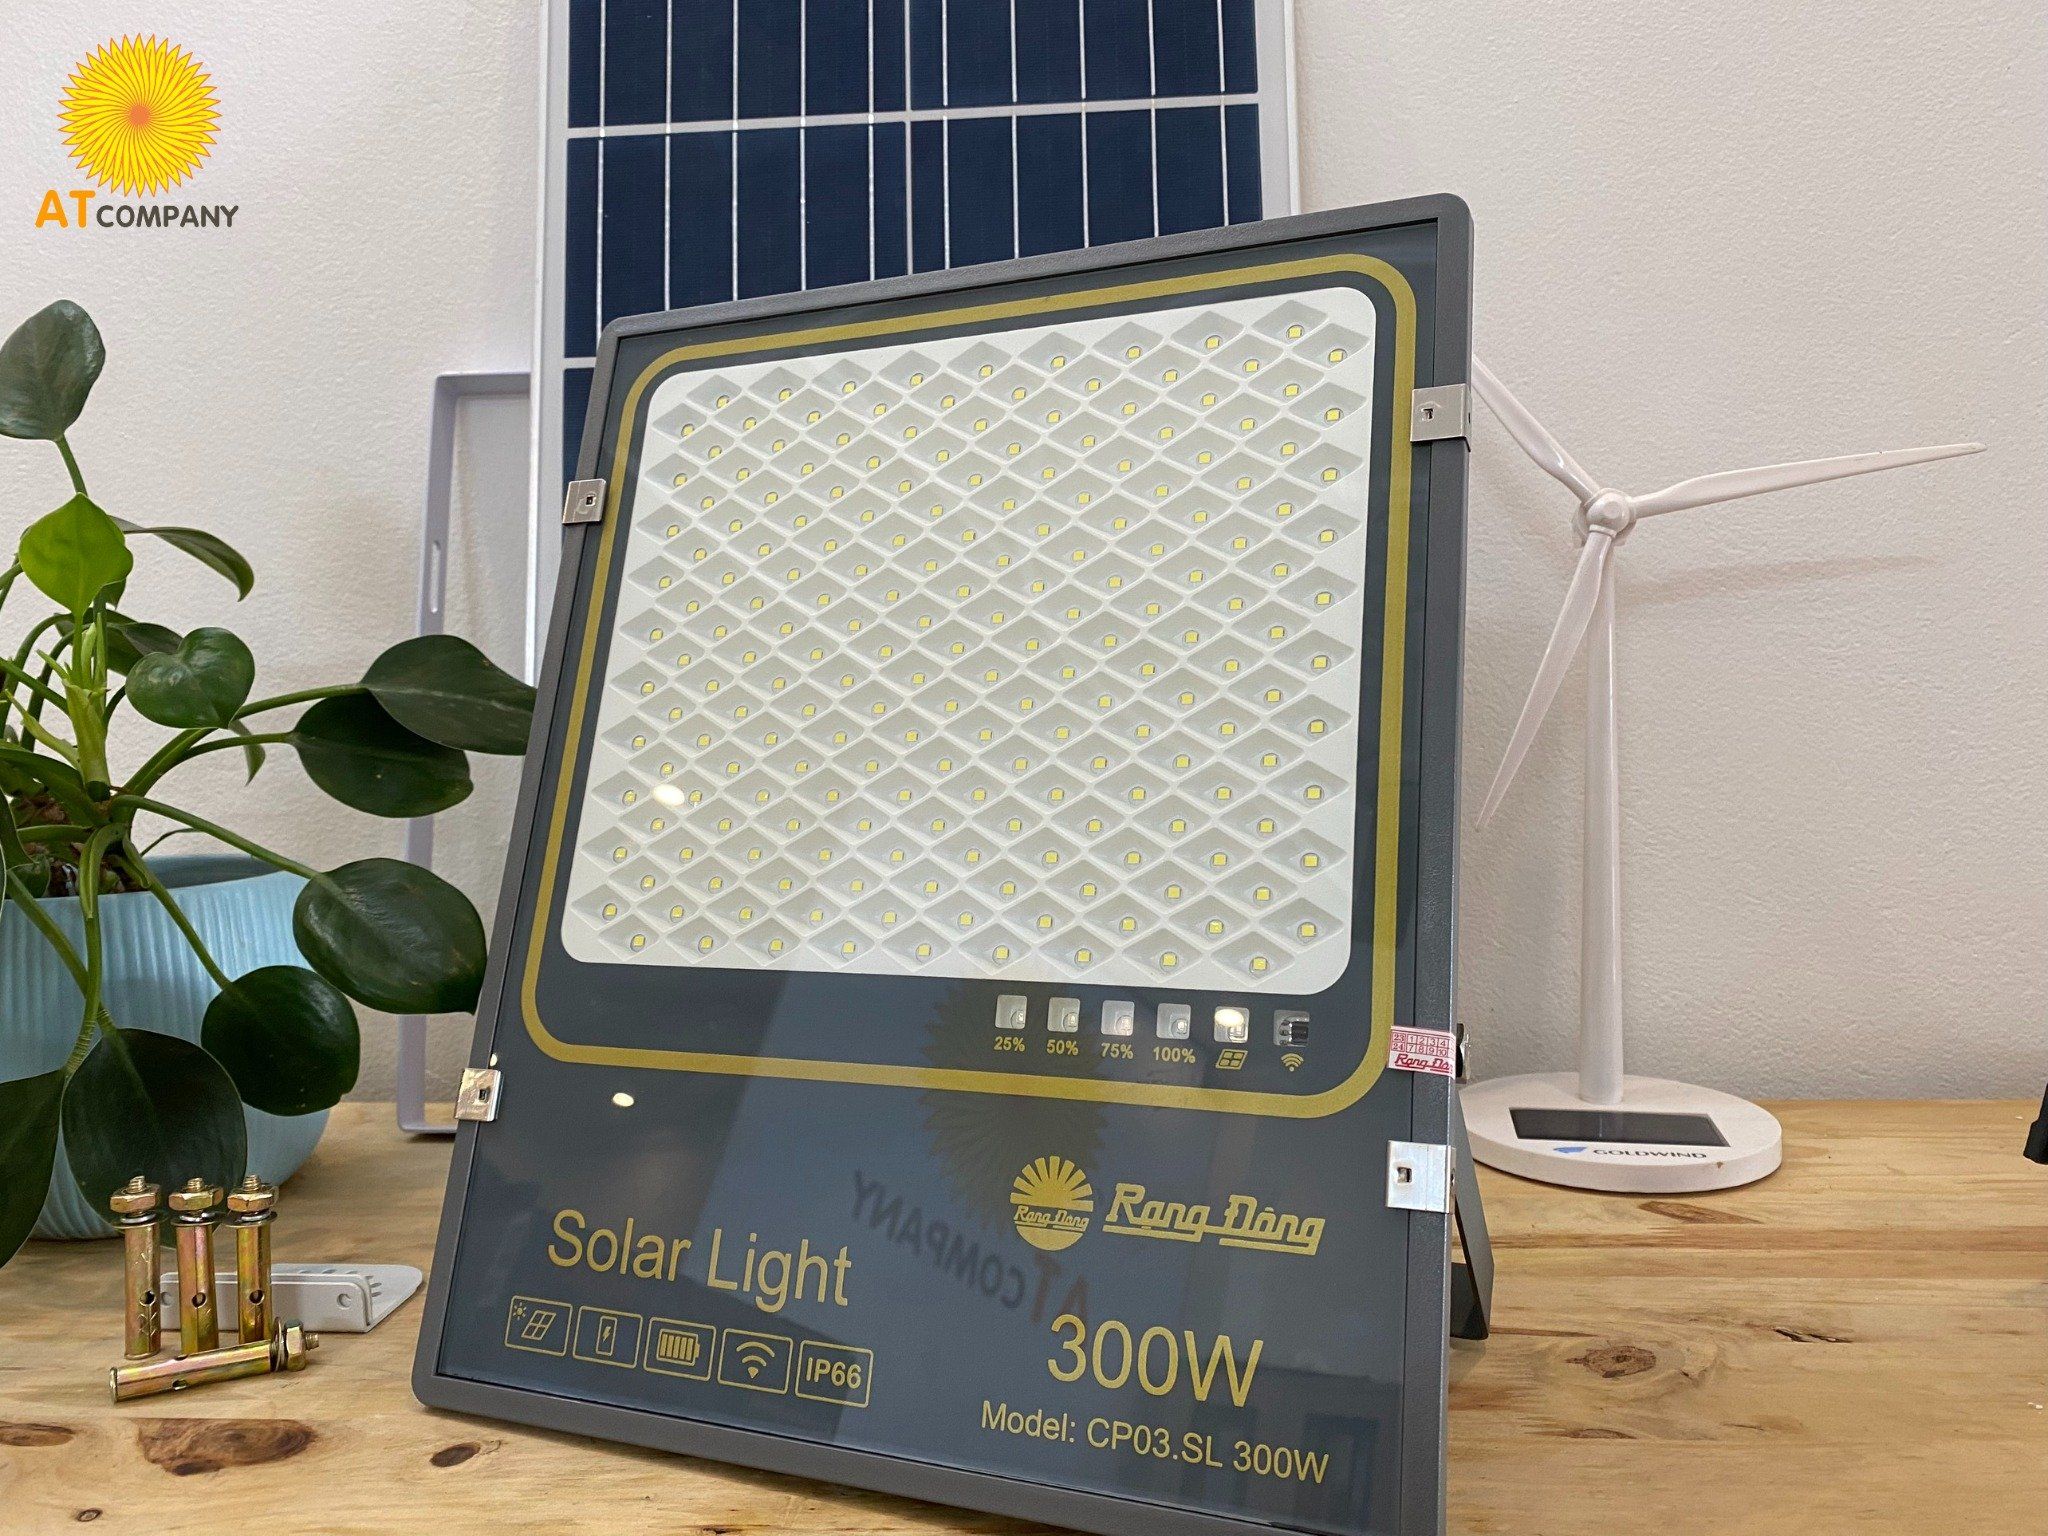  Đèn năng lượng mặt trời Rạng Đông 200W Model: CP03.SL 200W và 300W Model: CP03.SL 300W 